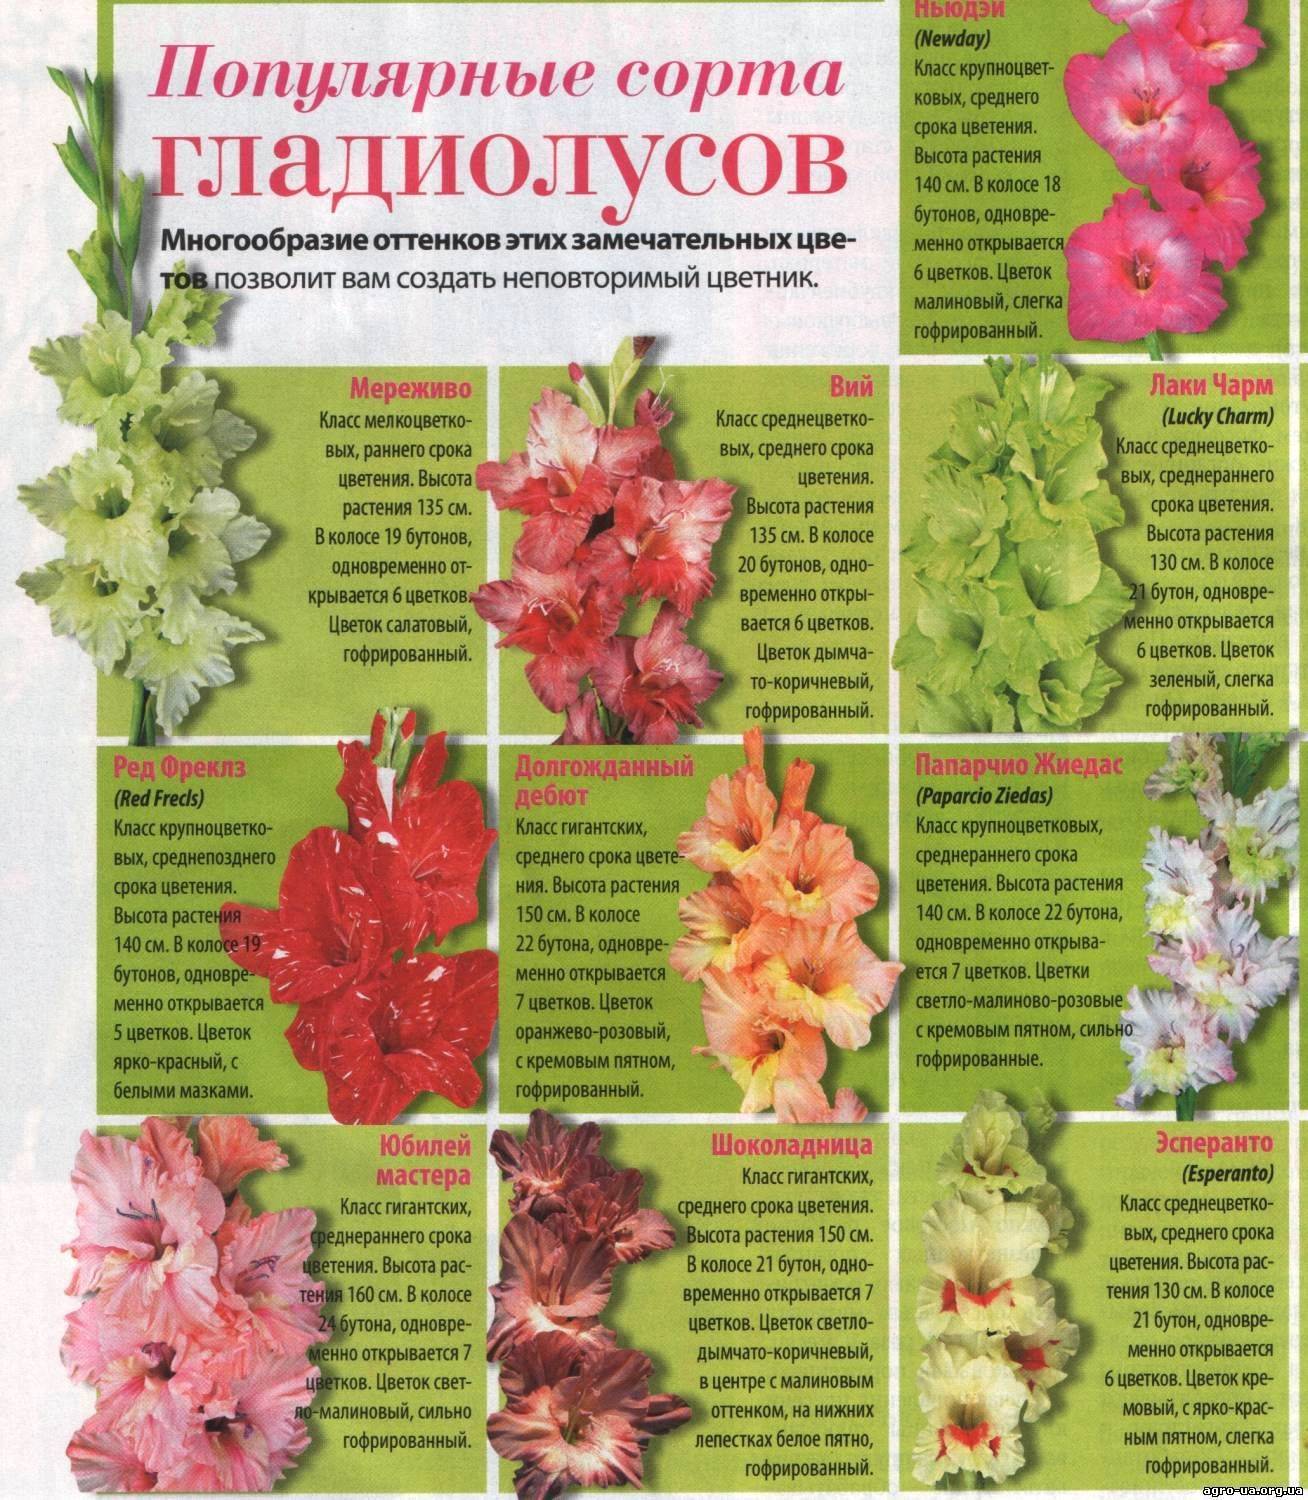 Гладиолусы: фото, описание сортов, особенности выращивания - sadovnikam.ru